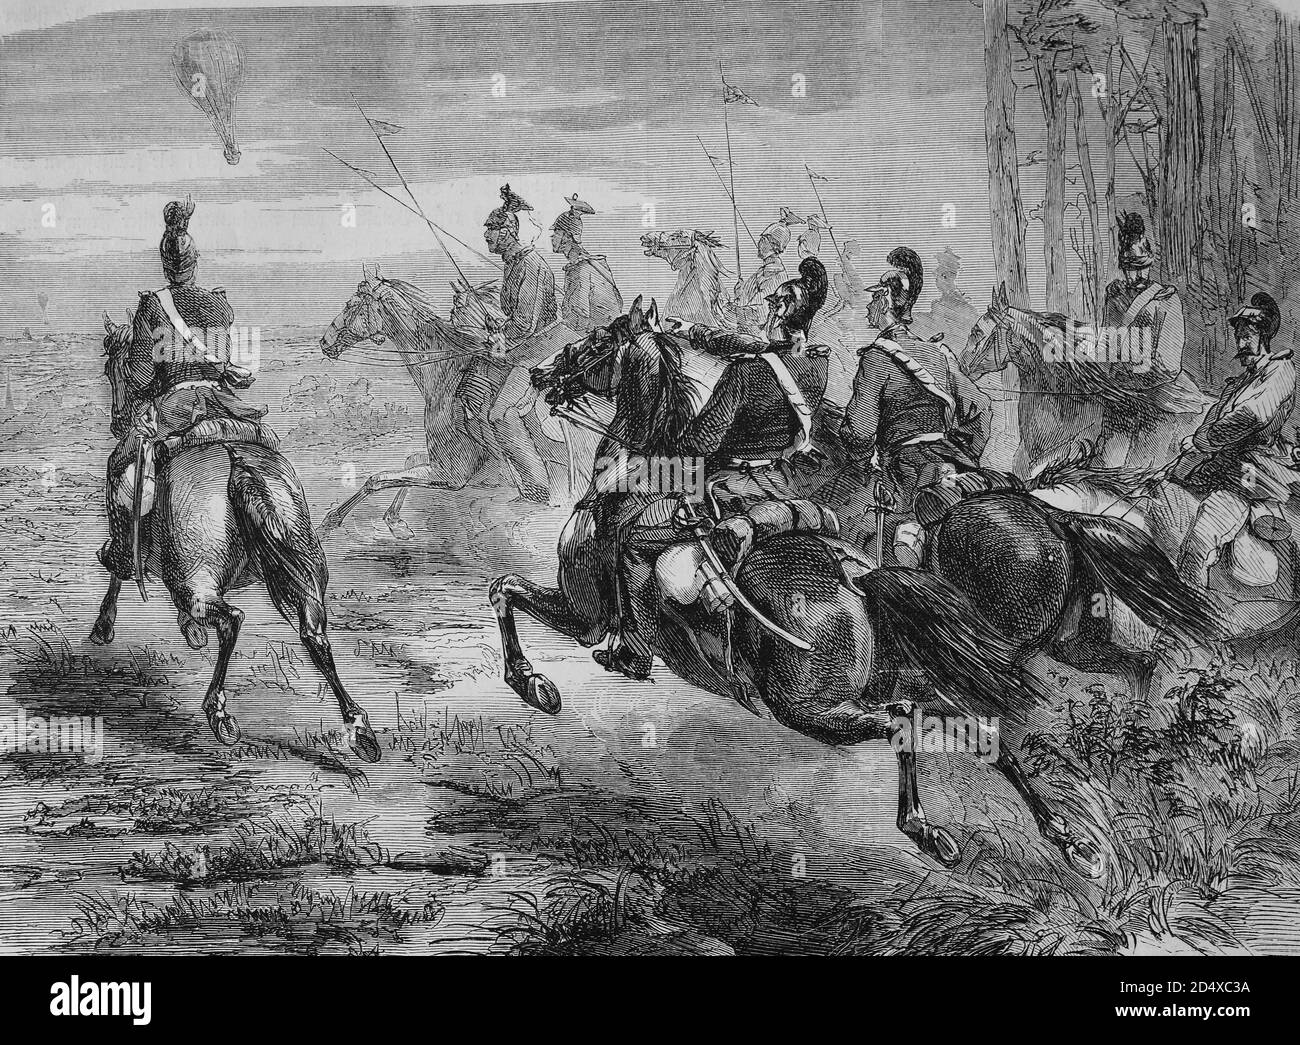 Verfolgung der französischen Ballonpost durch bayerische Soldaten, illustrierte Kriegsgeschichte, Deutsch - Französischer Krieg 1870-1871 Stockfoto